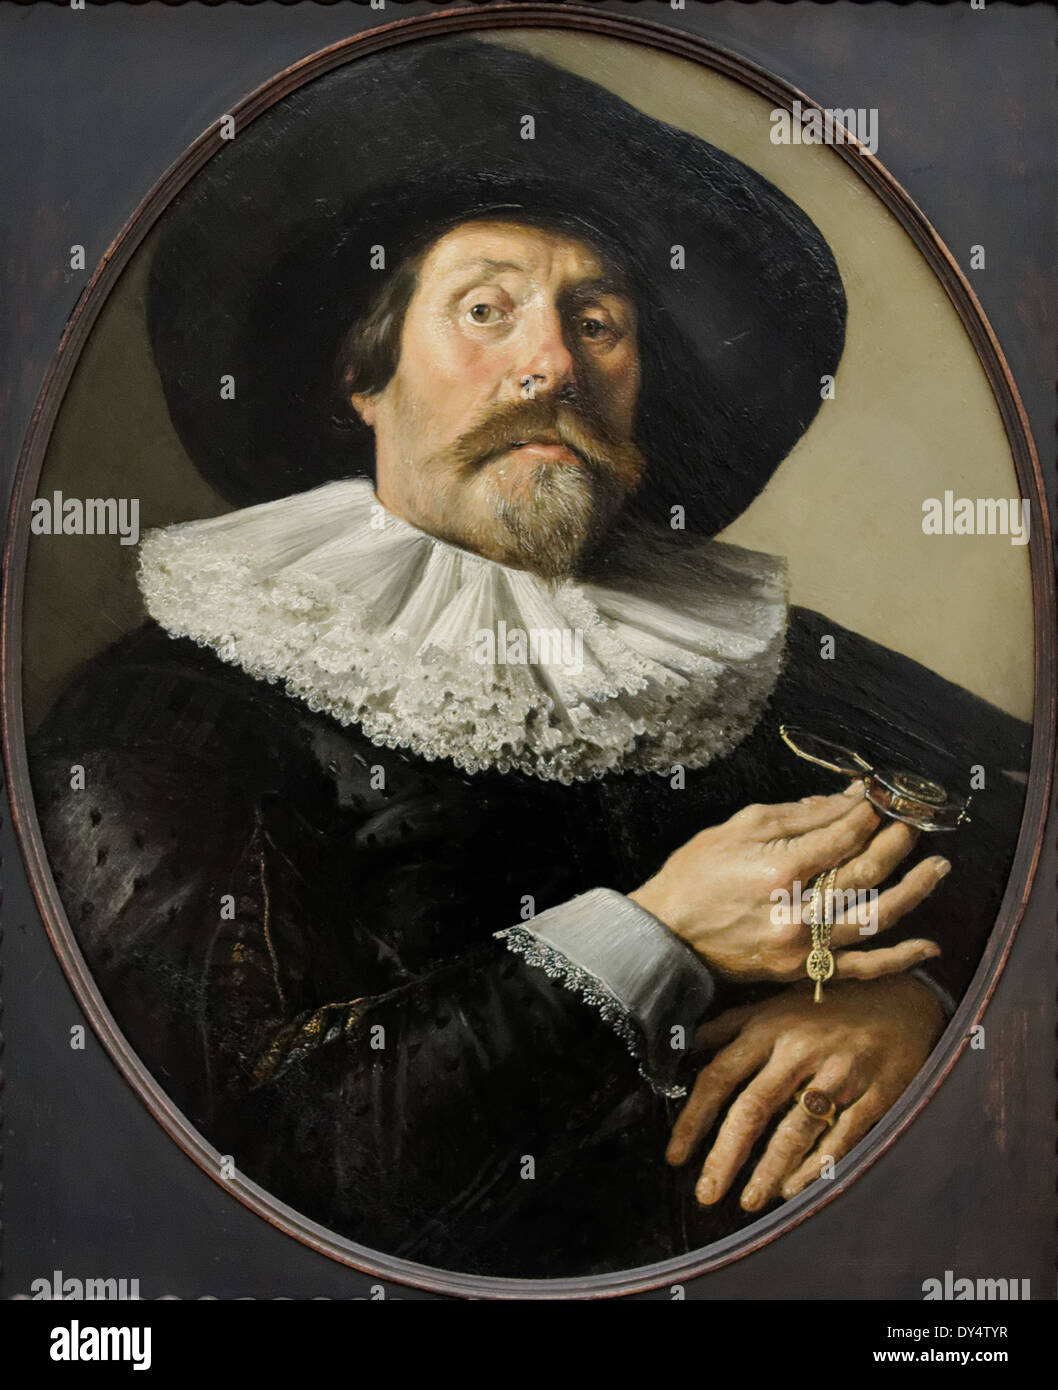 Pieter Codde - Portrait eines Mannes mit einer Uhr - 1634 - XVII th Jahrhundert - flämischen Schule - Gemäldegalerie - Berlin Stockfoto